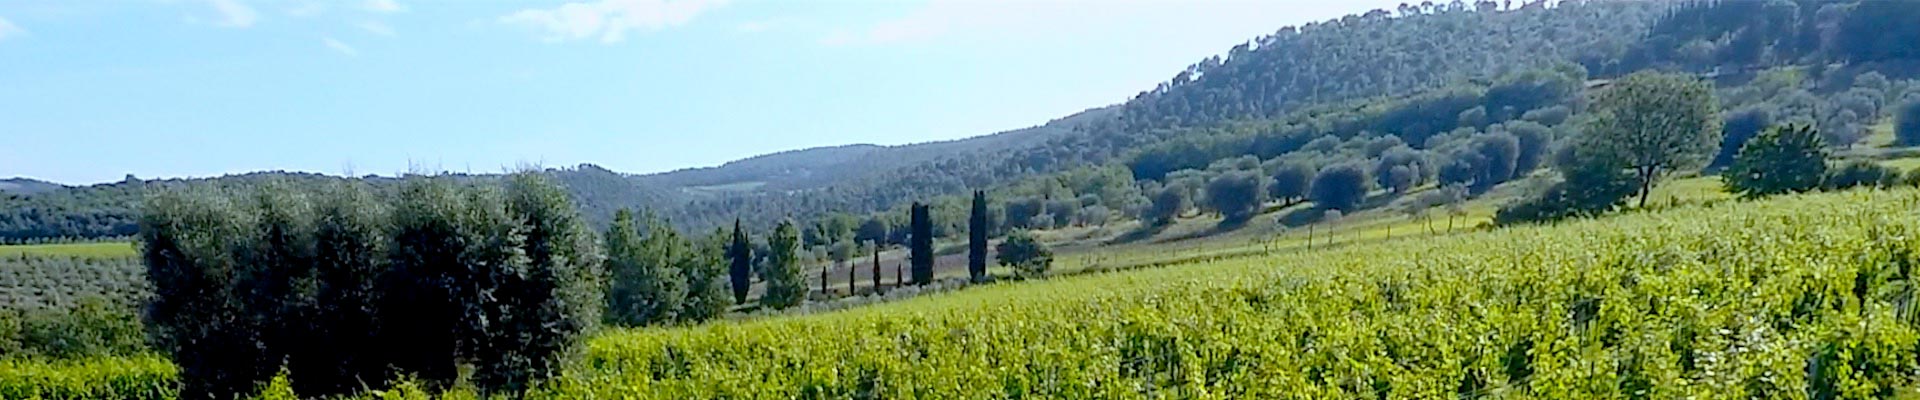 Soldera Case Basse winery